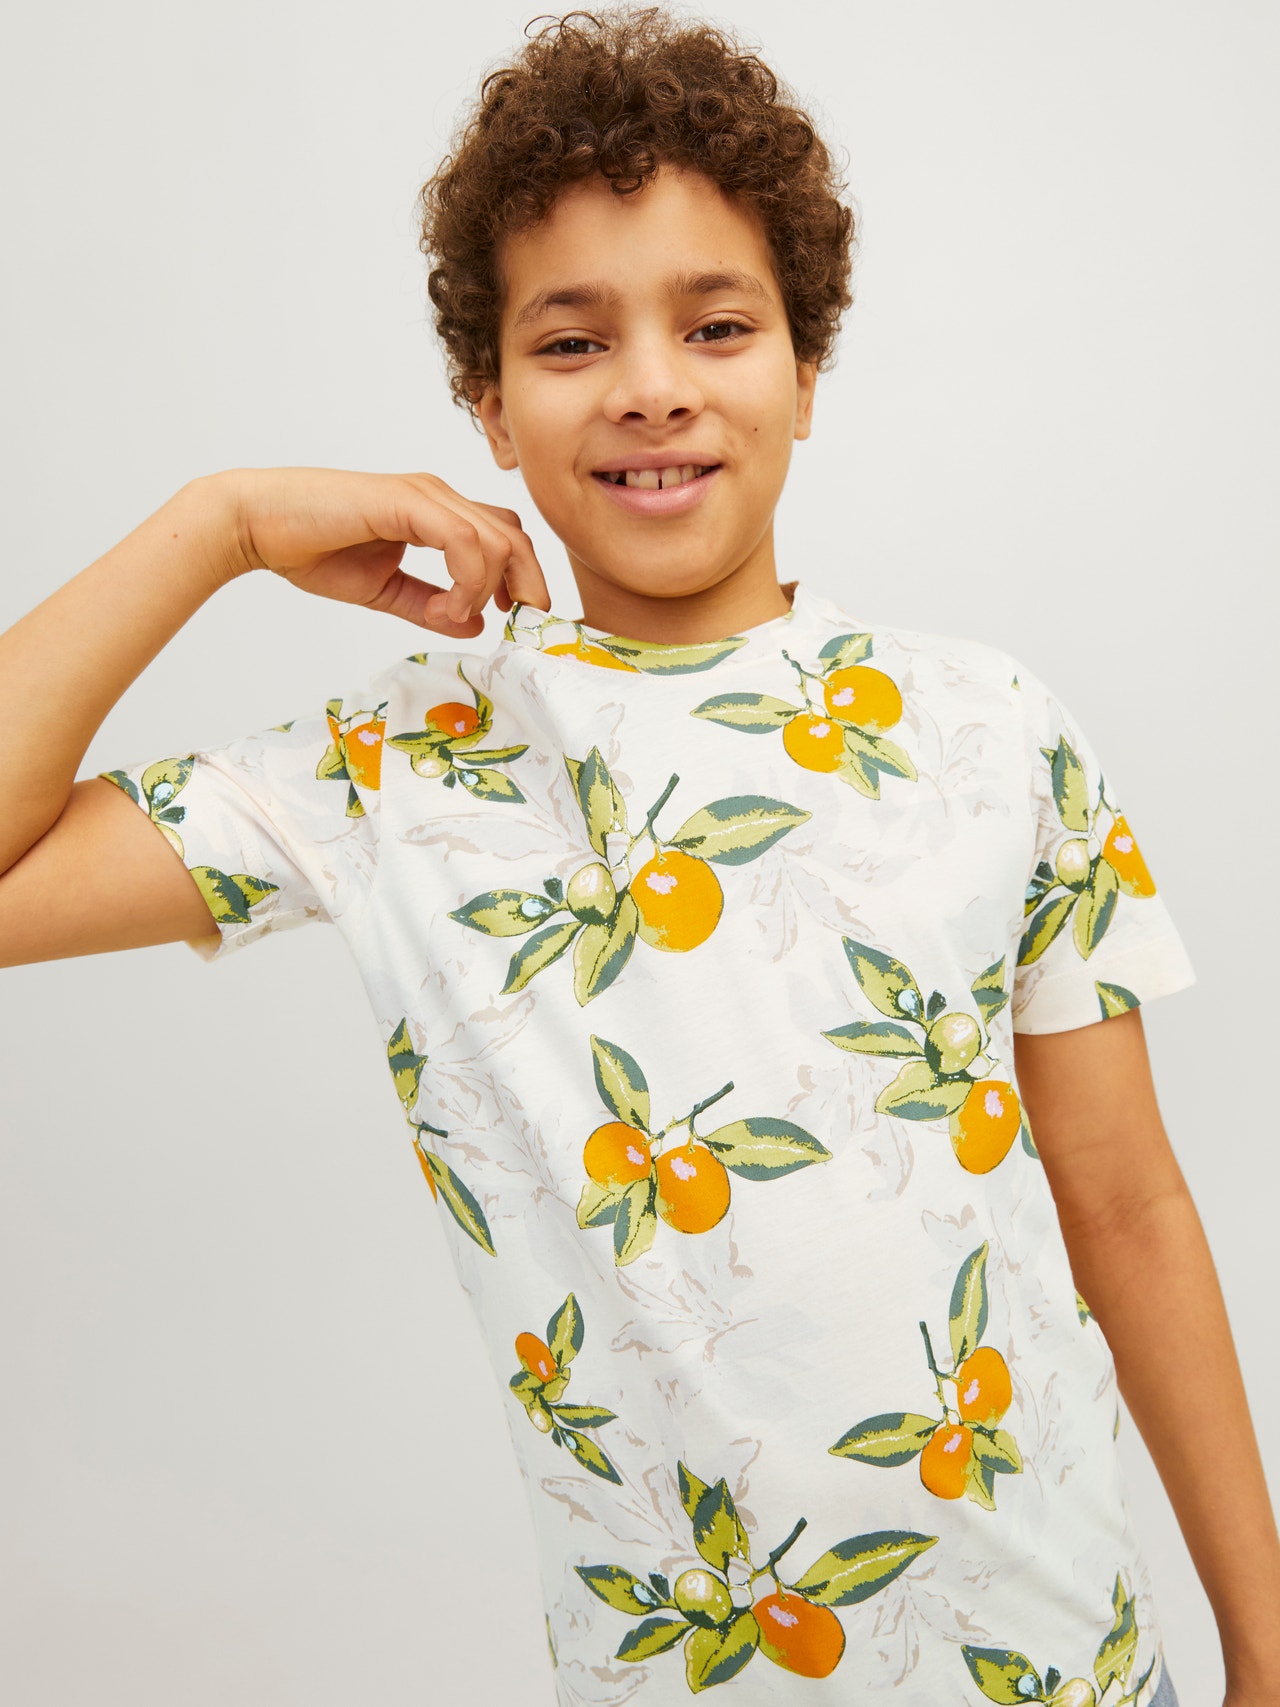 Jack & Jones T-shirt All Over Print Pour les garçons -Buttercream - 12254029